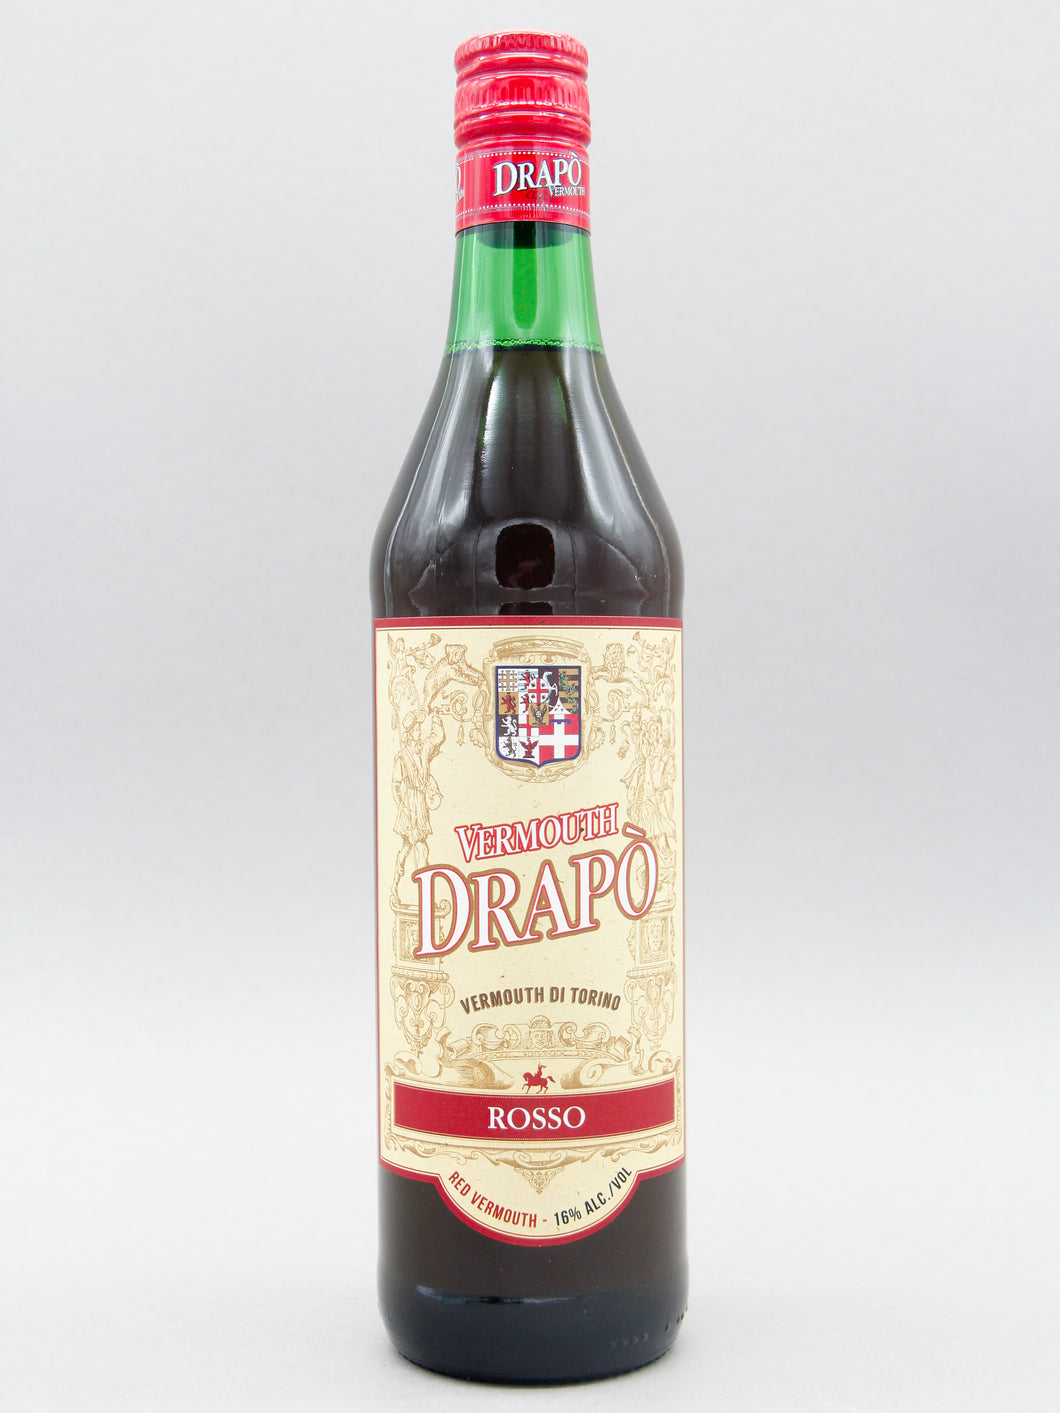 Drapo Vermouth Di Torino Rosso (16%, 75cl)